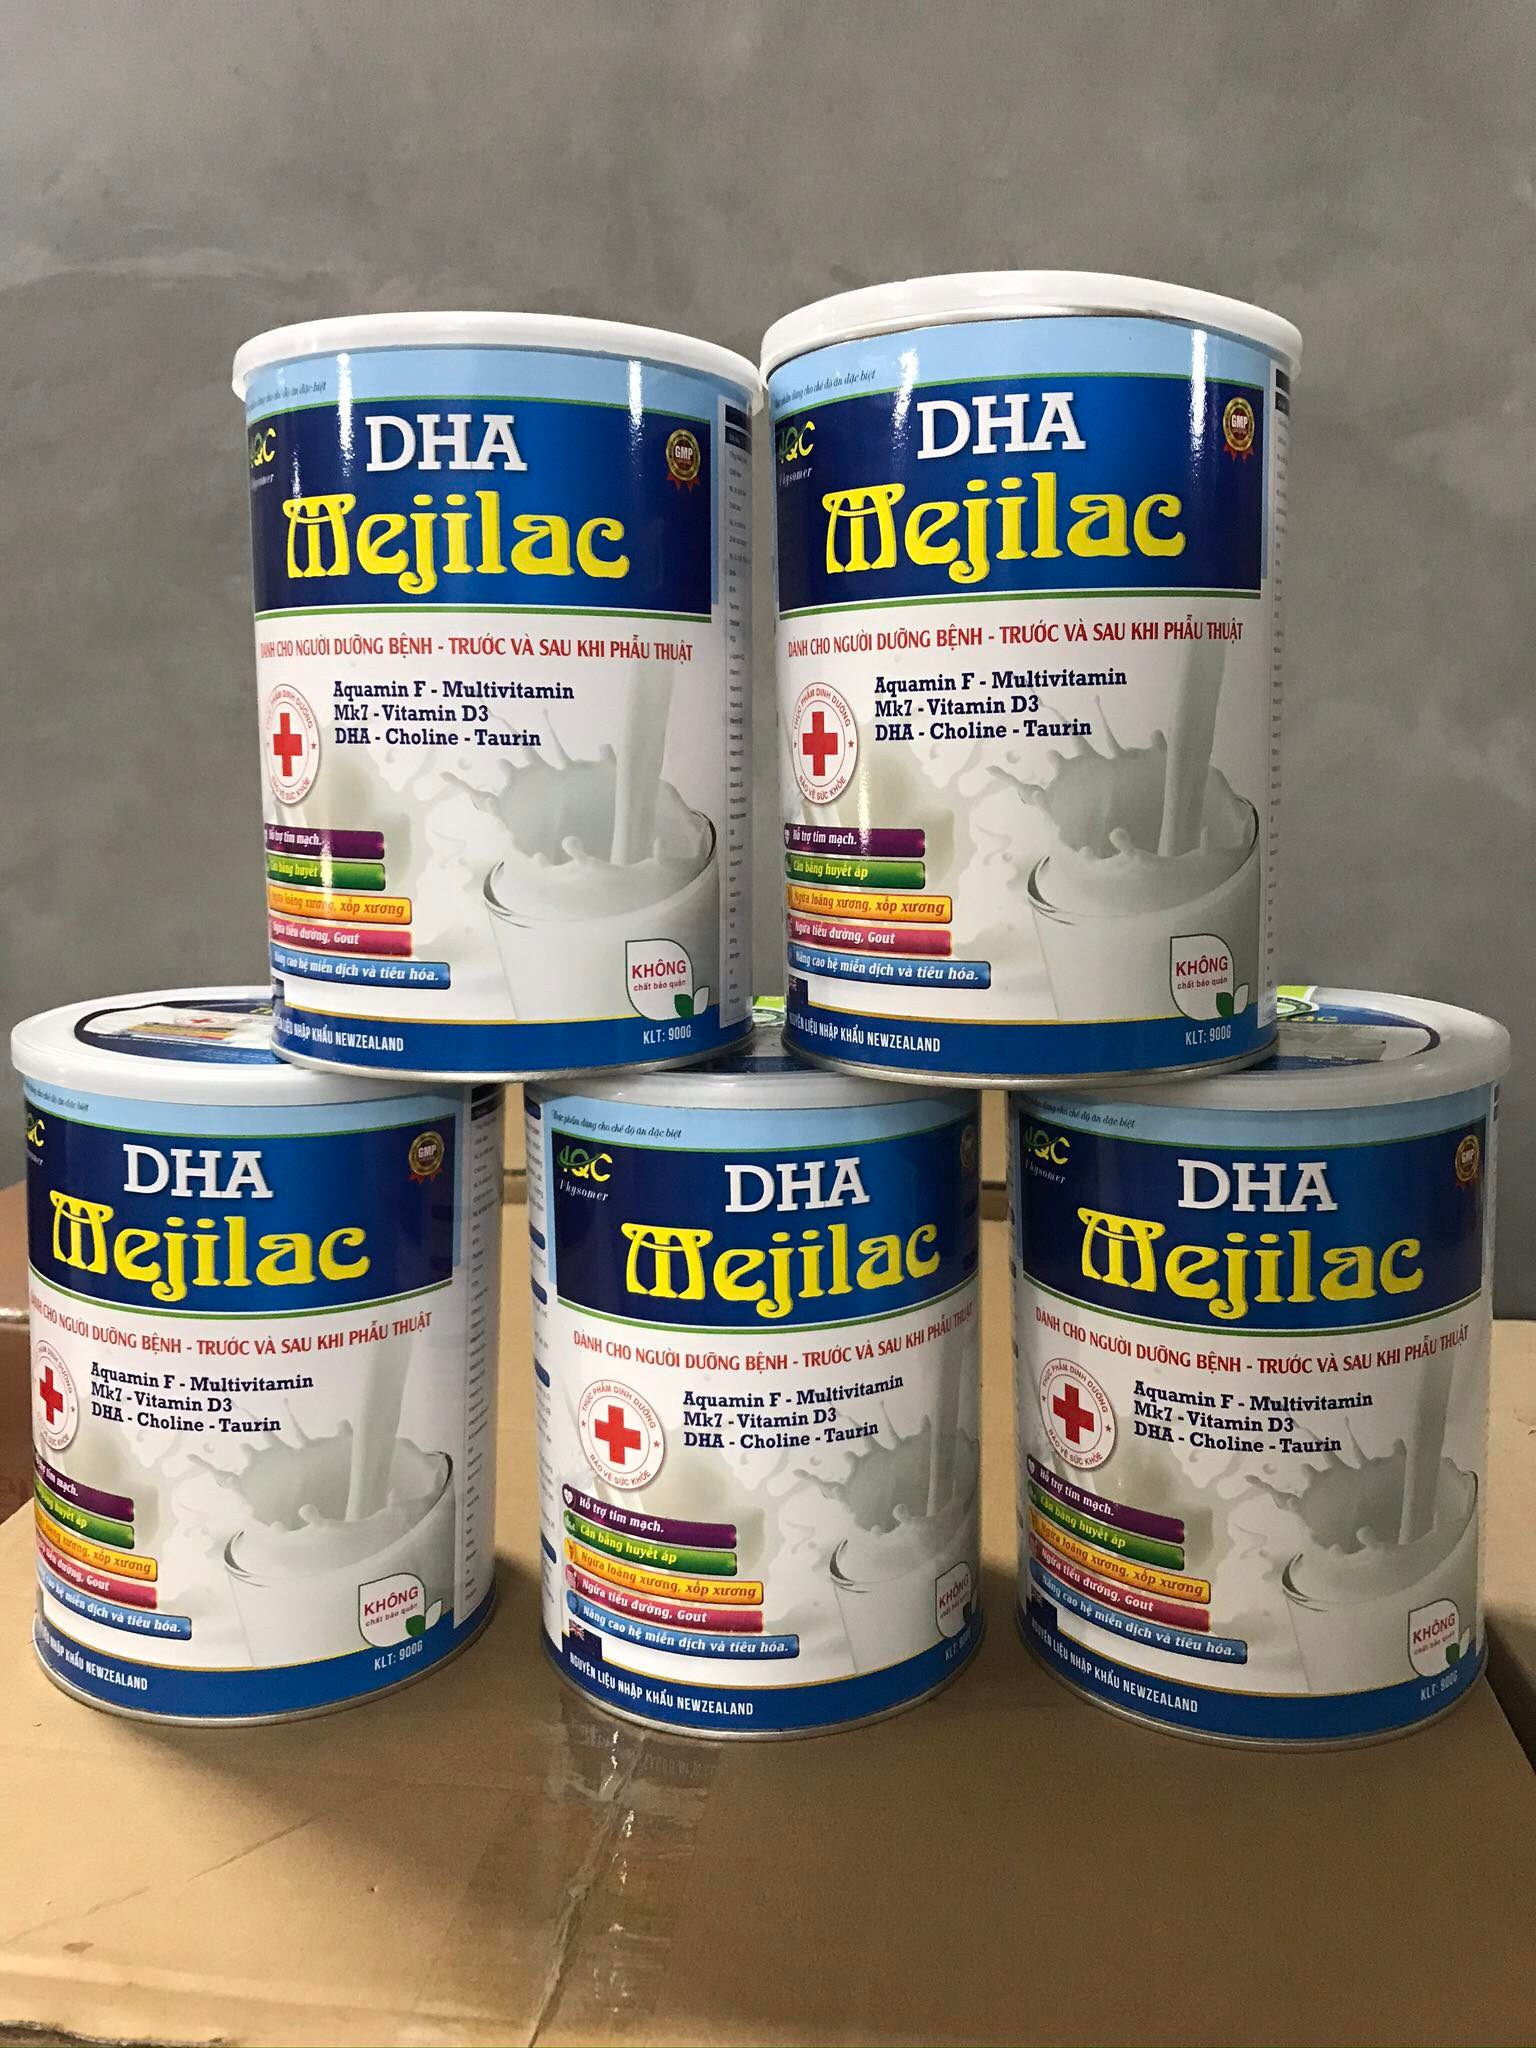 Sữa y tế- DHA Mejilac dành cho người dưỡng bệnh trước và sau phẫu thuật